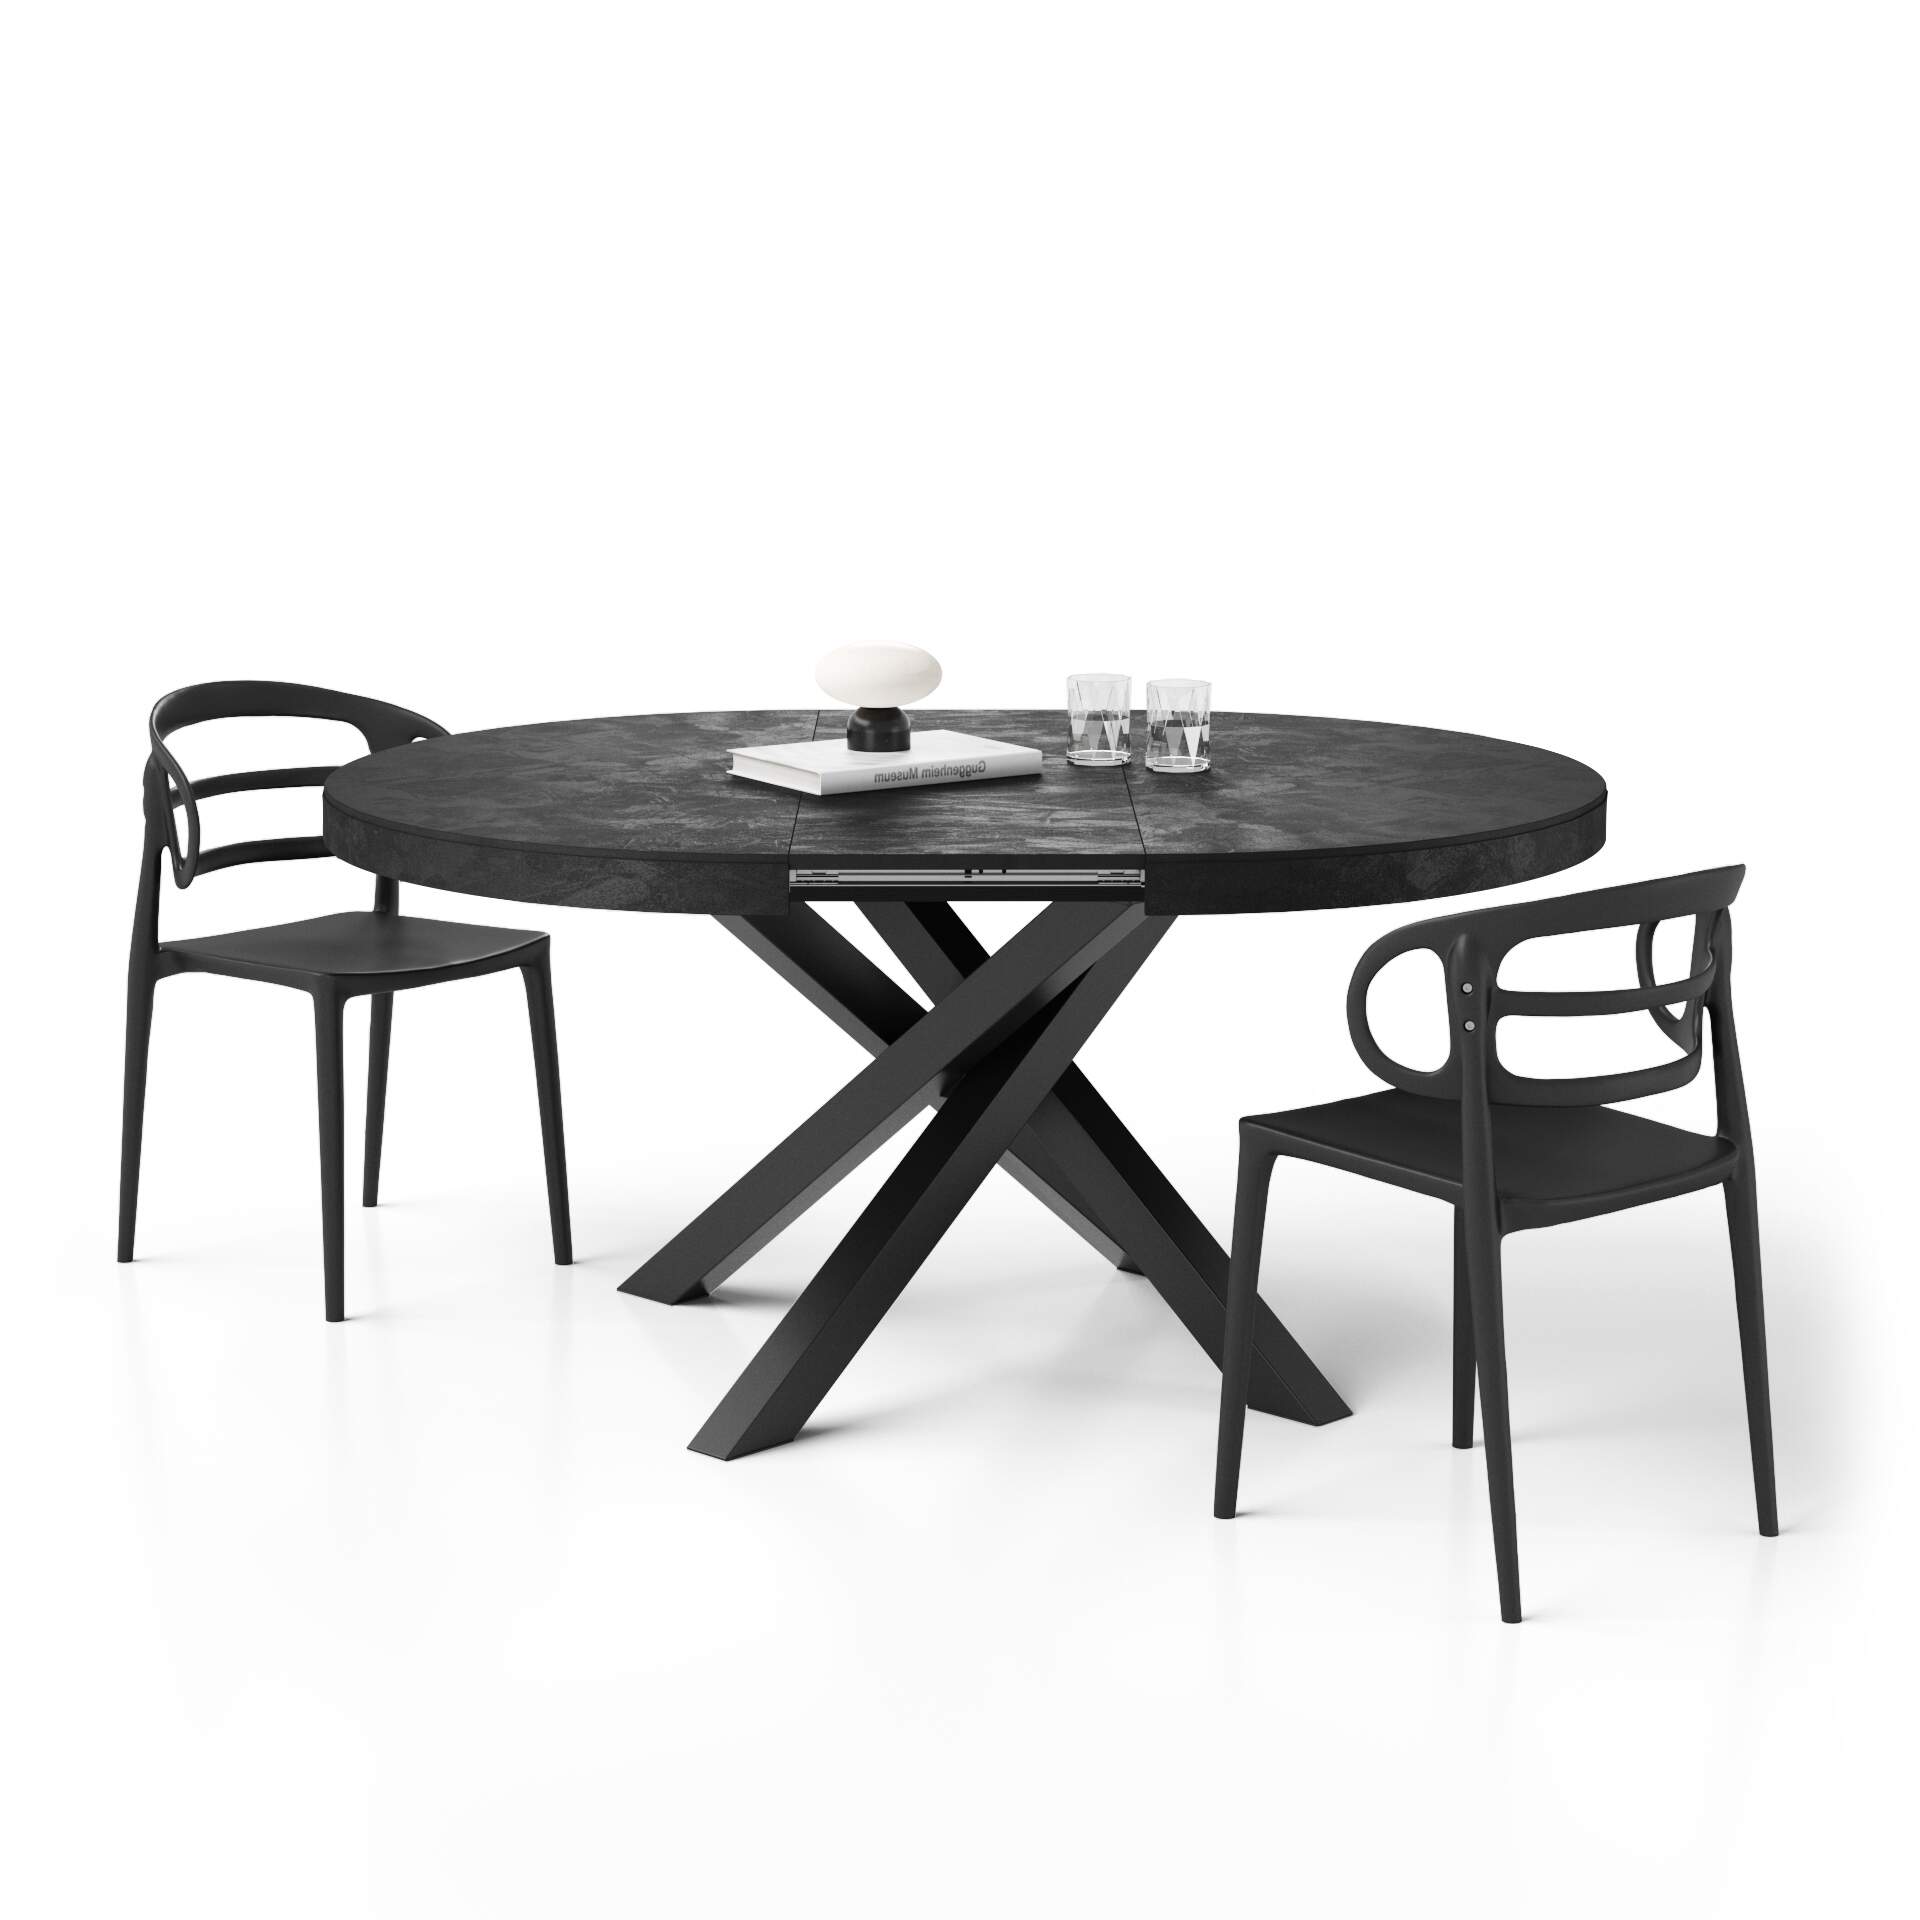 Mobili Fiver Mesa redonda extensible Emma 120-160 cm en negro cemento con patas cruzadas negras